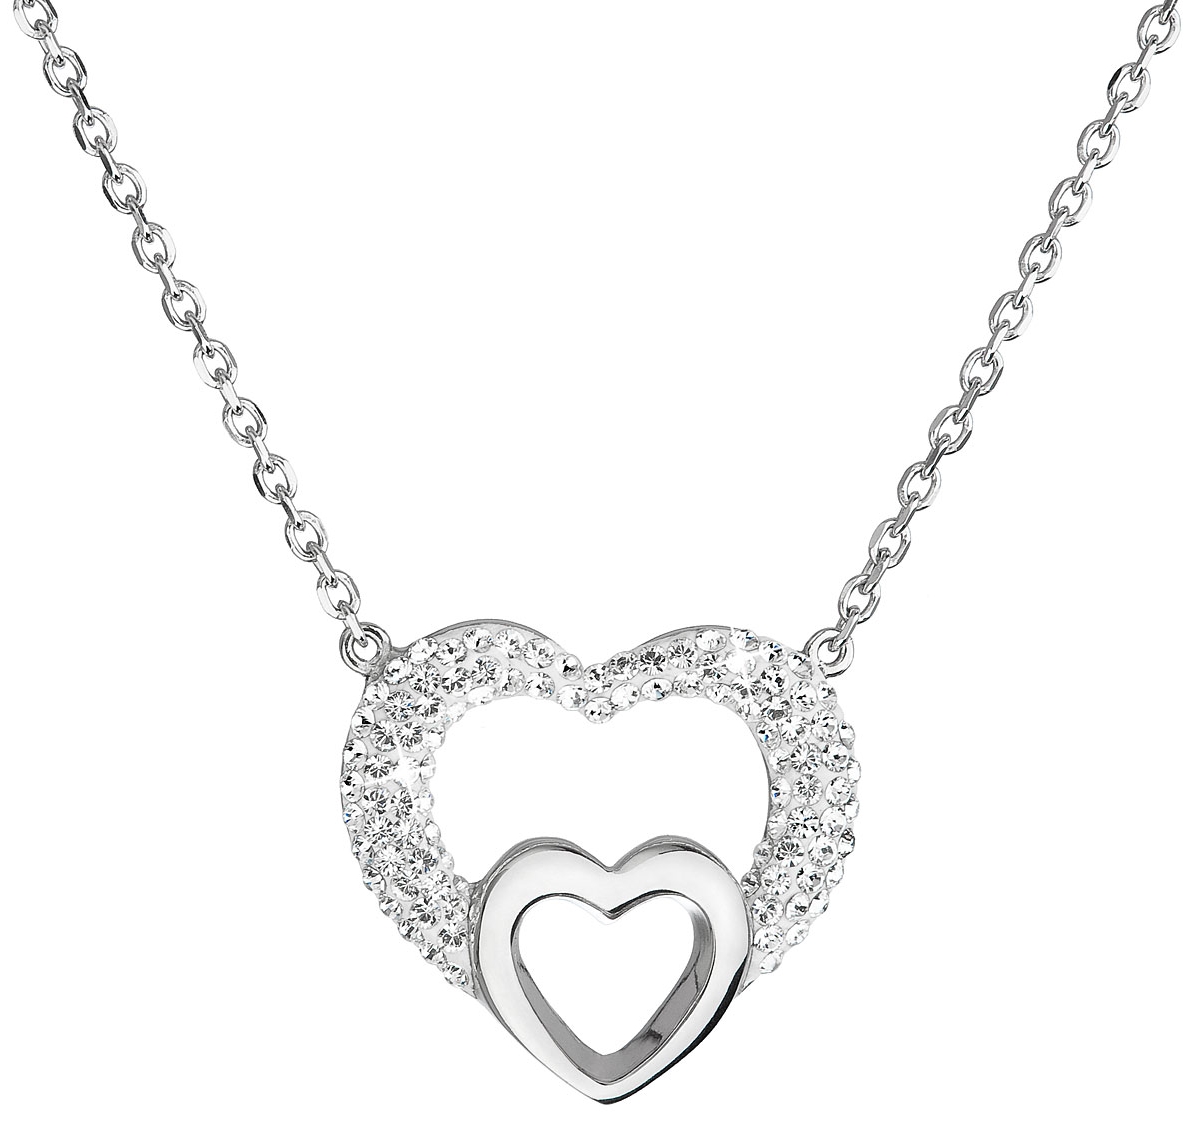 Strieborný náhrdelník s krištáľmi Swarovski biele srdce 32032.1